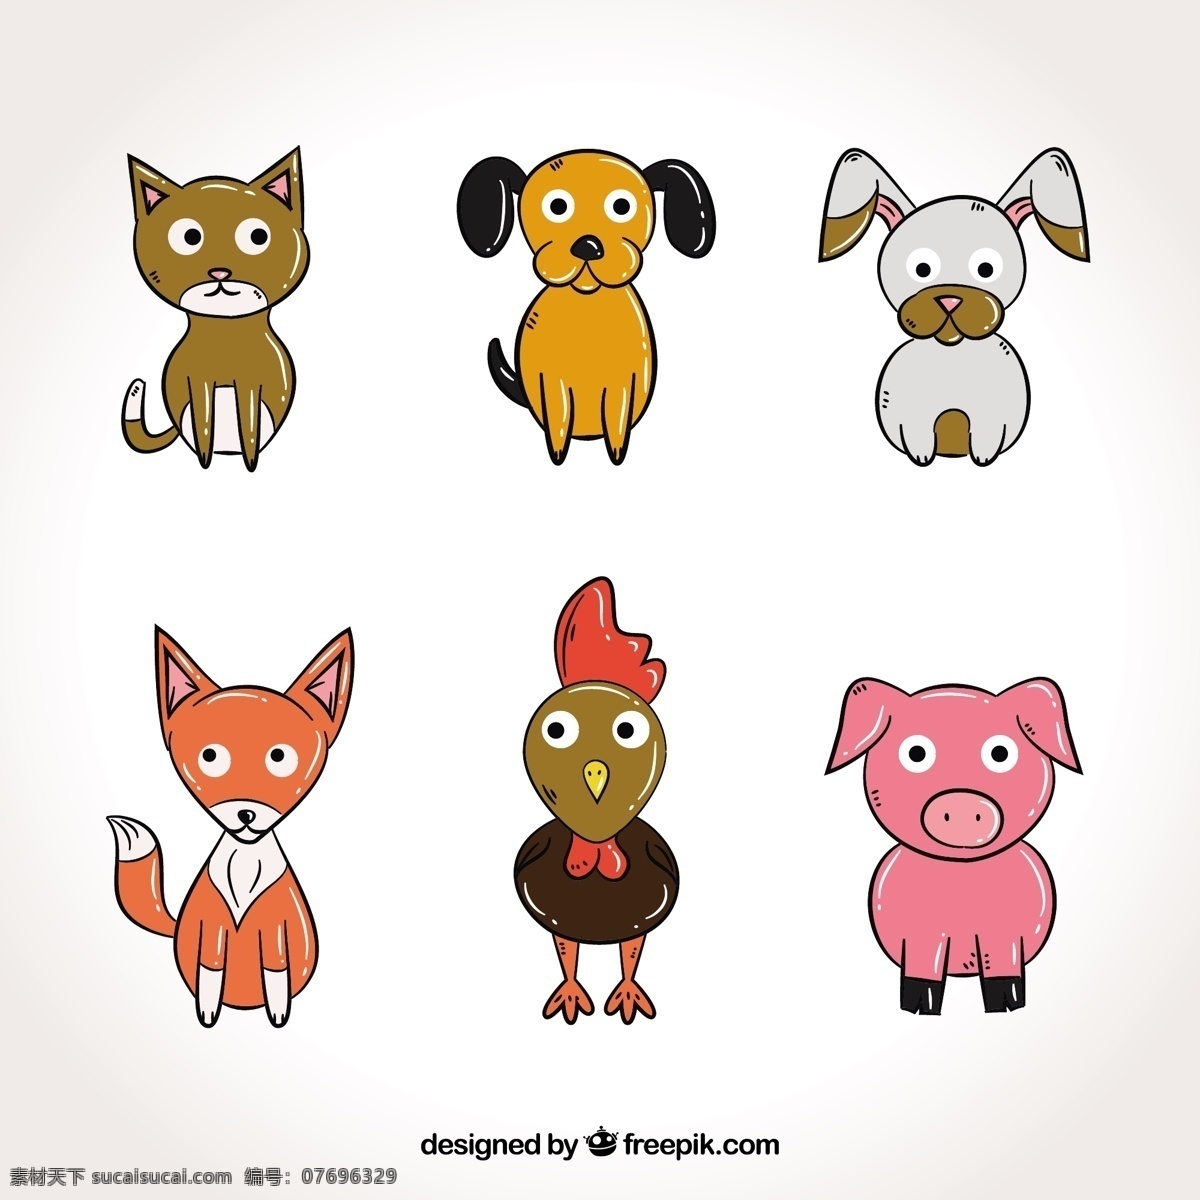 大 眼睛 手绘 动物 手 狗 自然 卡通 猫 可爱 快乐 五颜六色 绘画 兔子 猪 公鸡 狐狸 有趣 可爱的动物